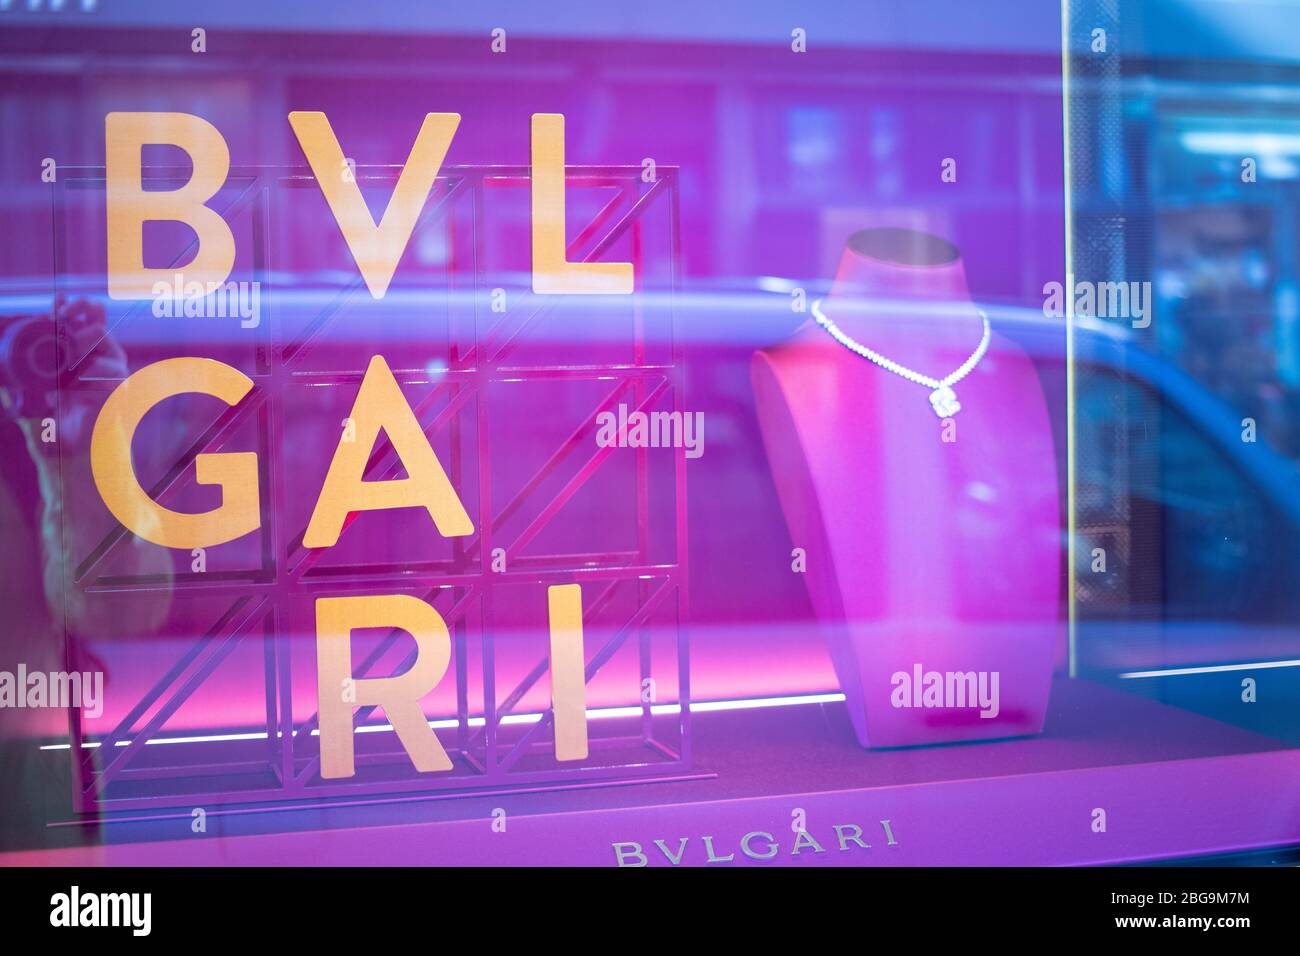 BVLGARI magasin de bijoux, boutique de fenêtres, exposition avec bijoux en diamant, bagues, colliers, boucles d'oreilles de BVLGARI Banque D'Images